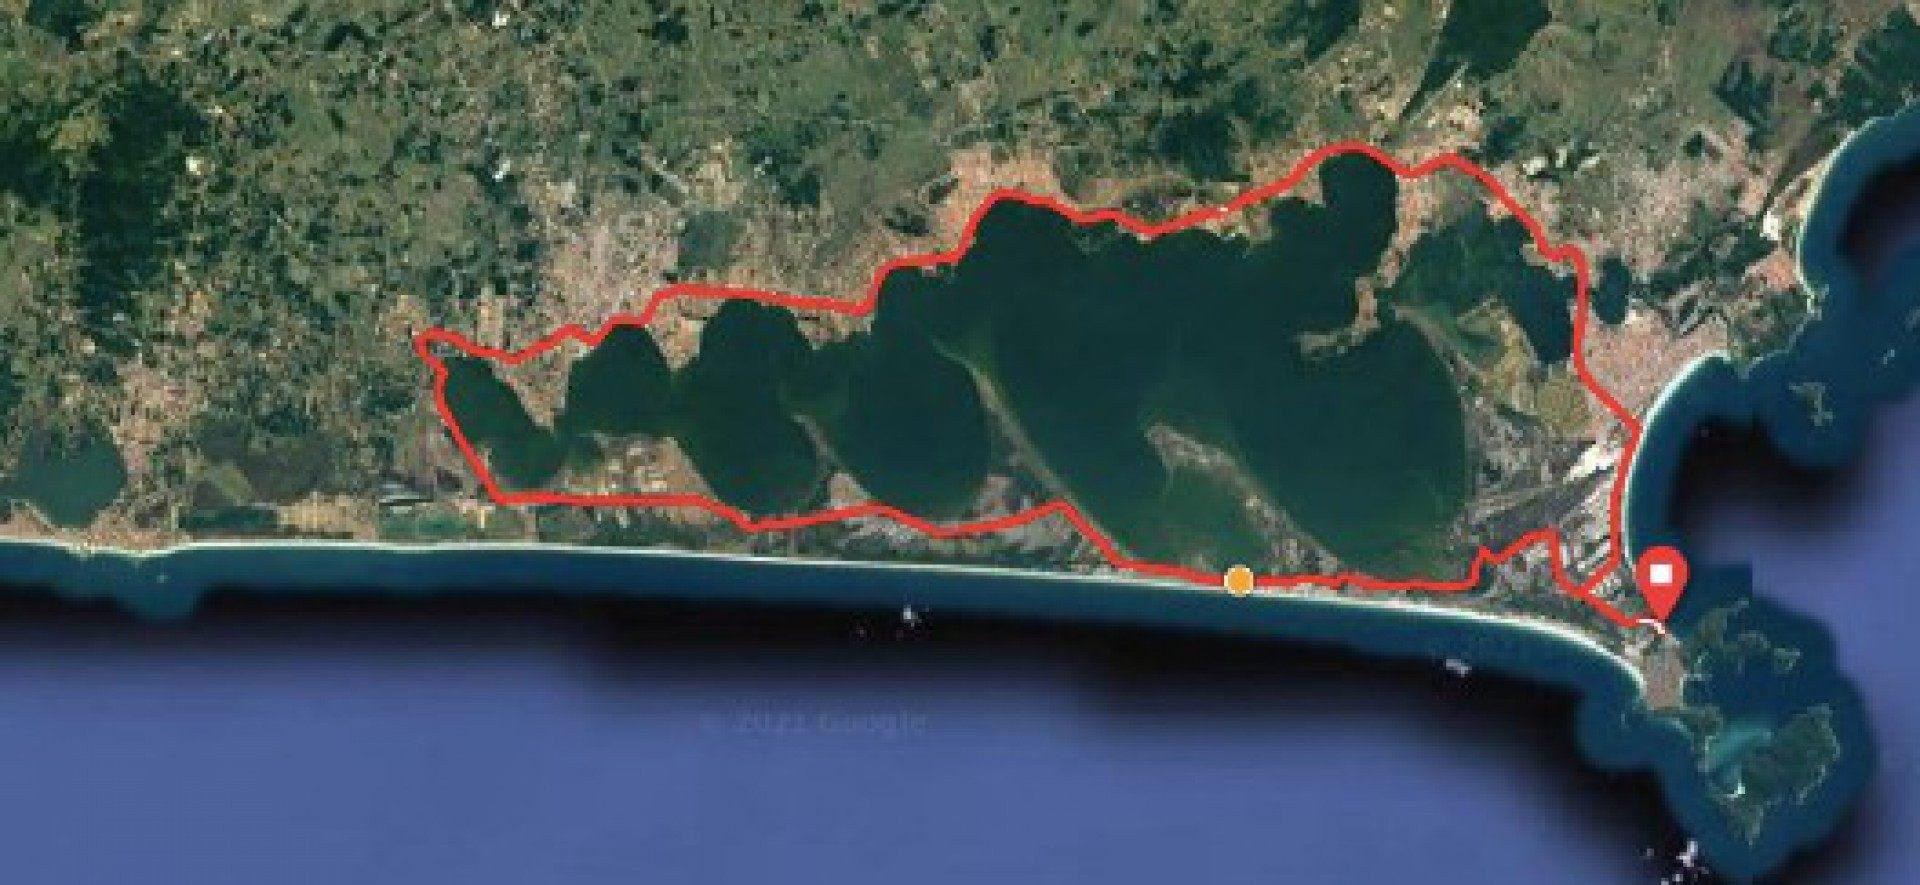 Evento ciclístico acontece no dia 12 de dezembro com largada na Praia Grande, em Arraial do Cabo - Divulgação